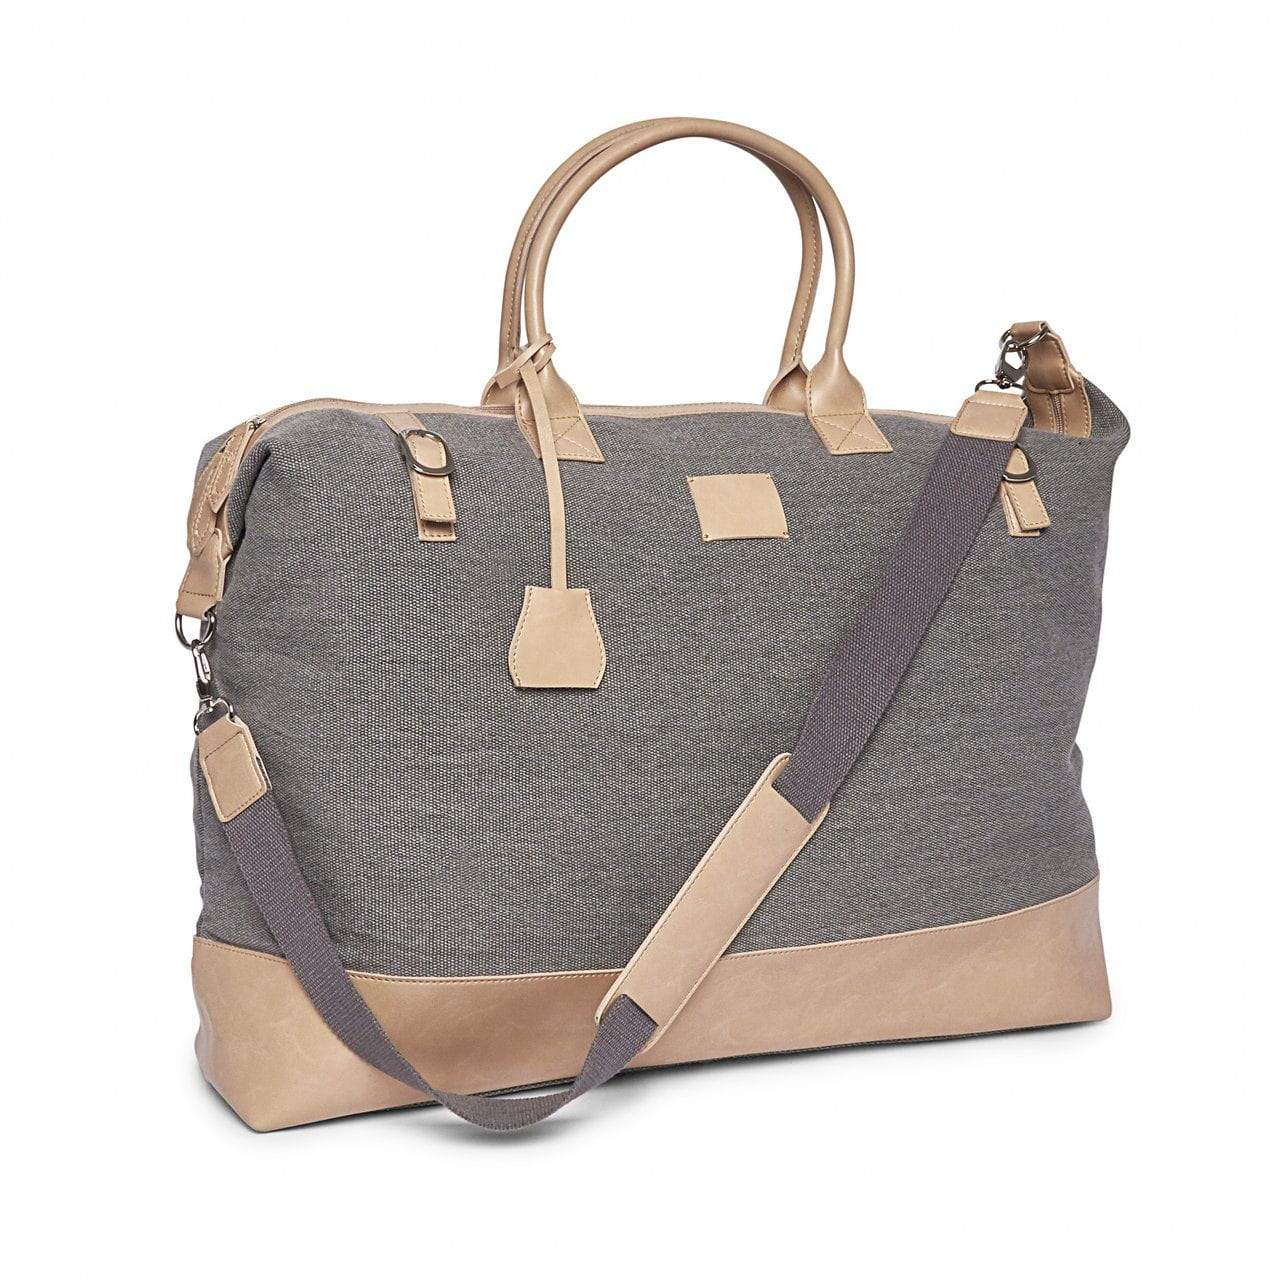 Brouk & Co Handbags Hartford Weekender Bag